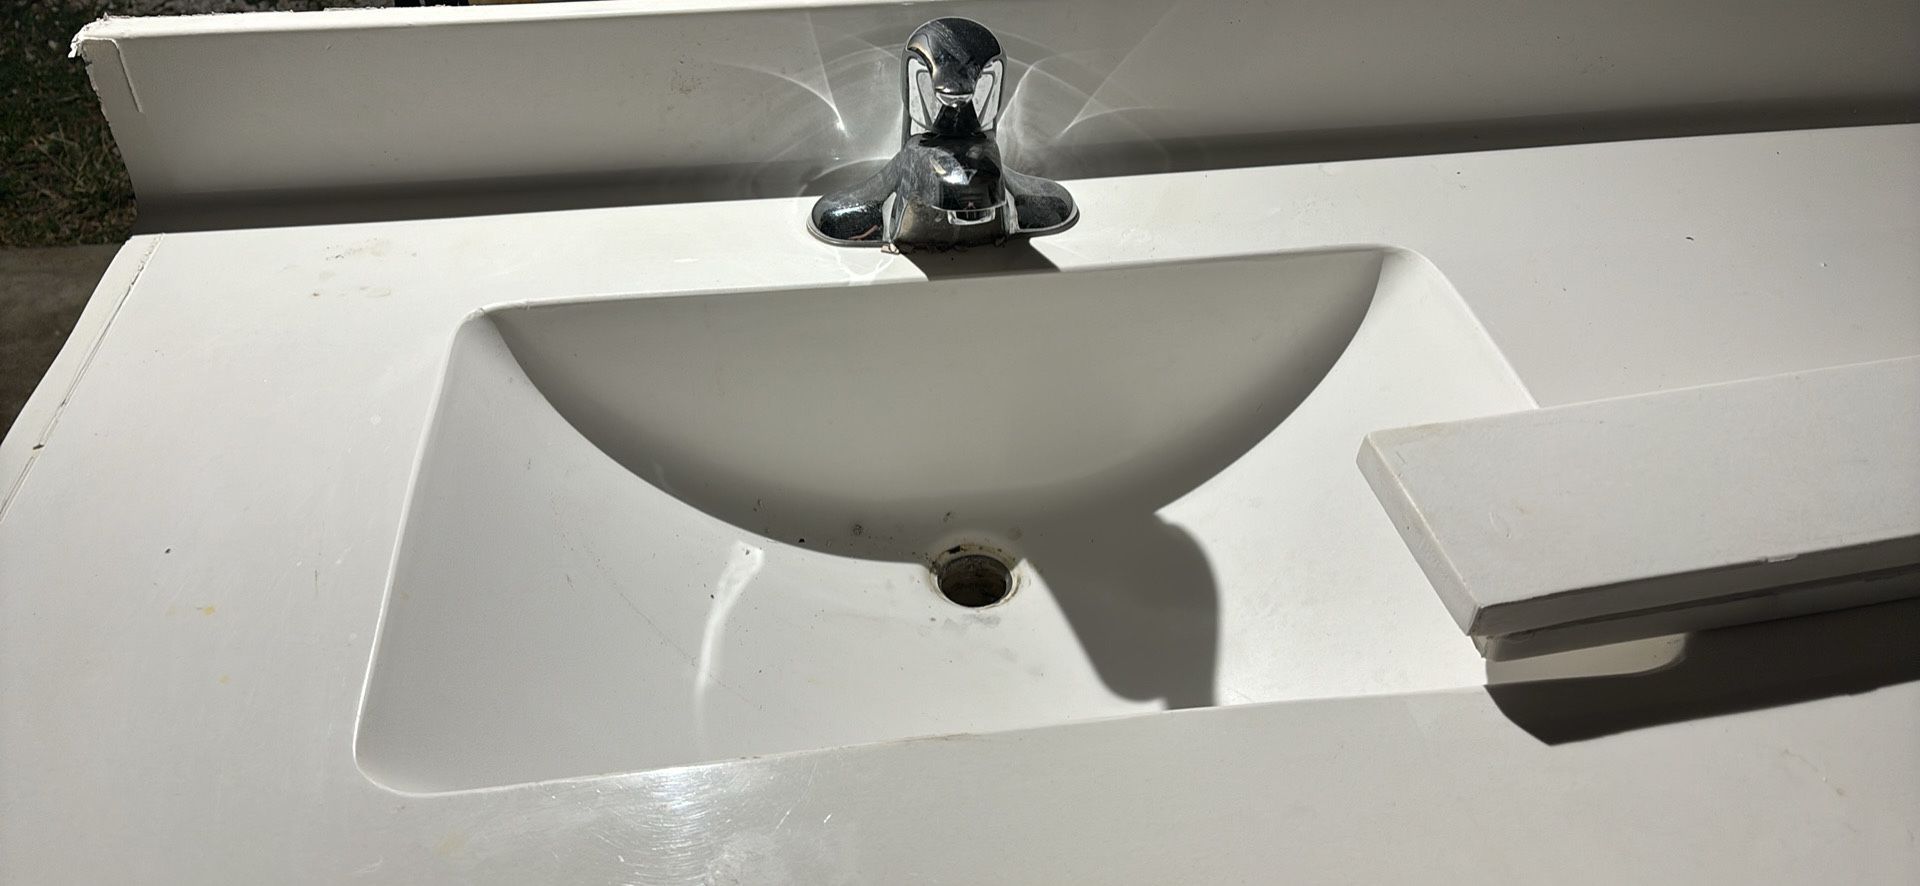 Double Sink Vanity